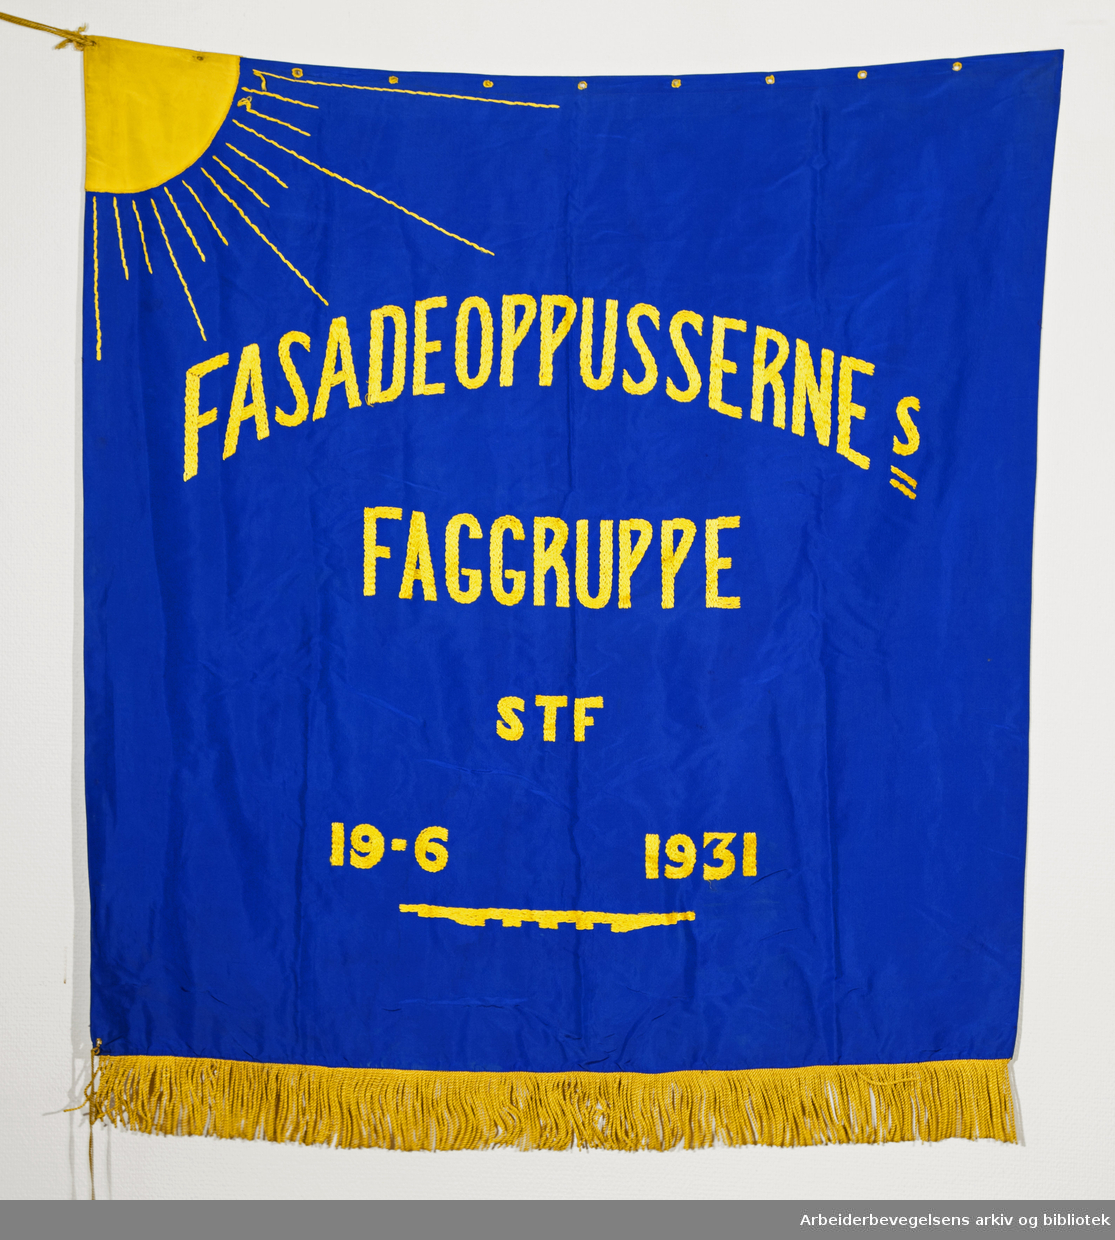 Fasadeoppussernes Faggruppe (Forside). Fanetekst: Fasadeoppussernes Faggruppe STF 19. 6. 1931